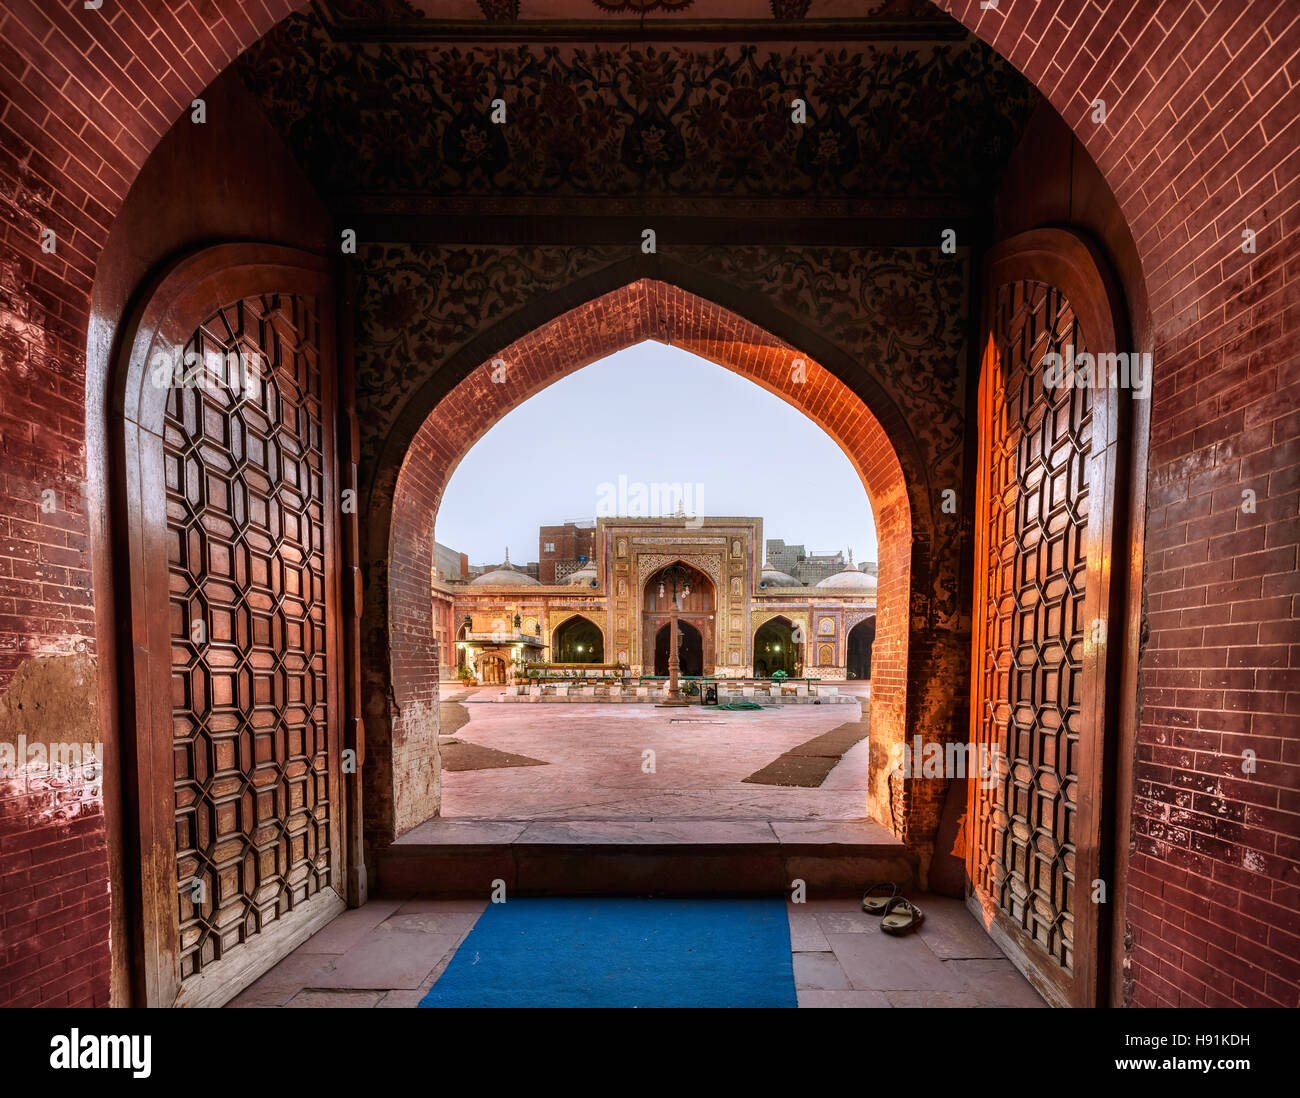 L'entrée dans la mosquée de Wazir Khan est au travers d'un grand style timuride Iwan sur un plus petit portail qui fait face à l'Wazir Khan Chowk. Banque D'Images